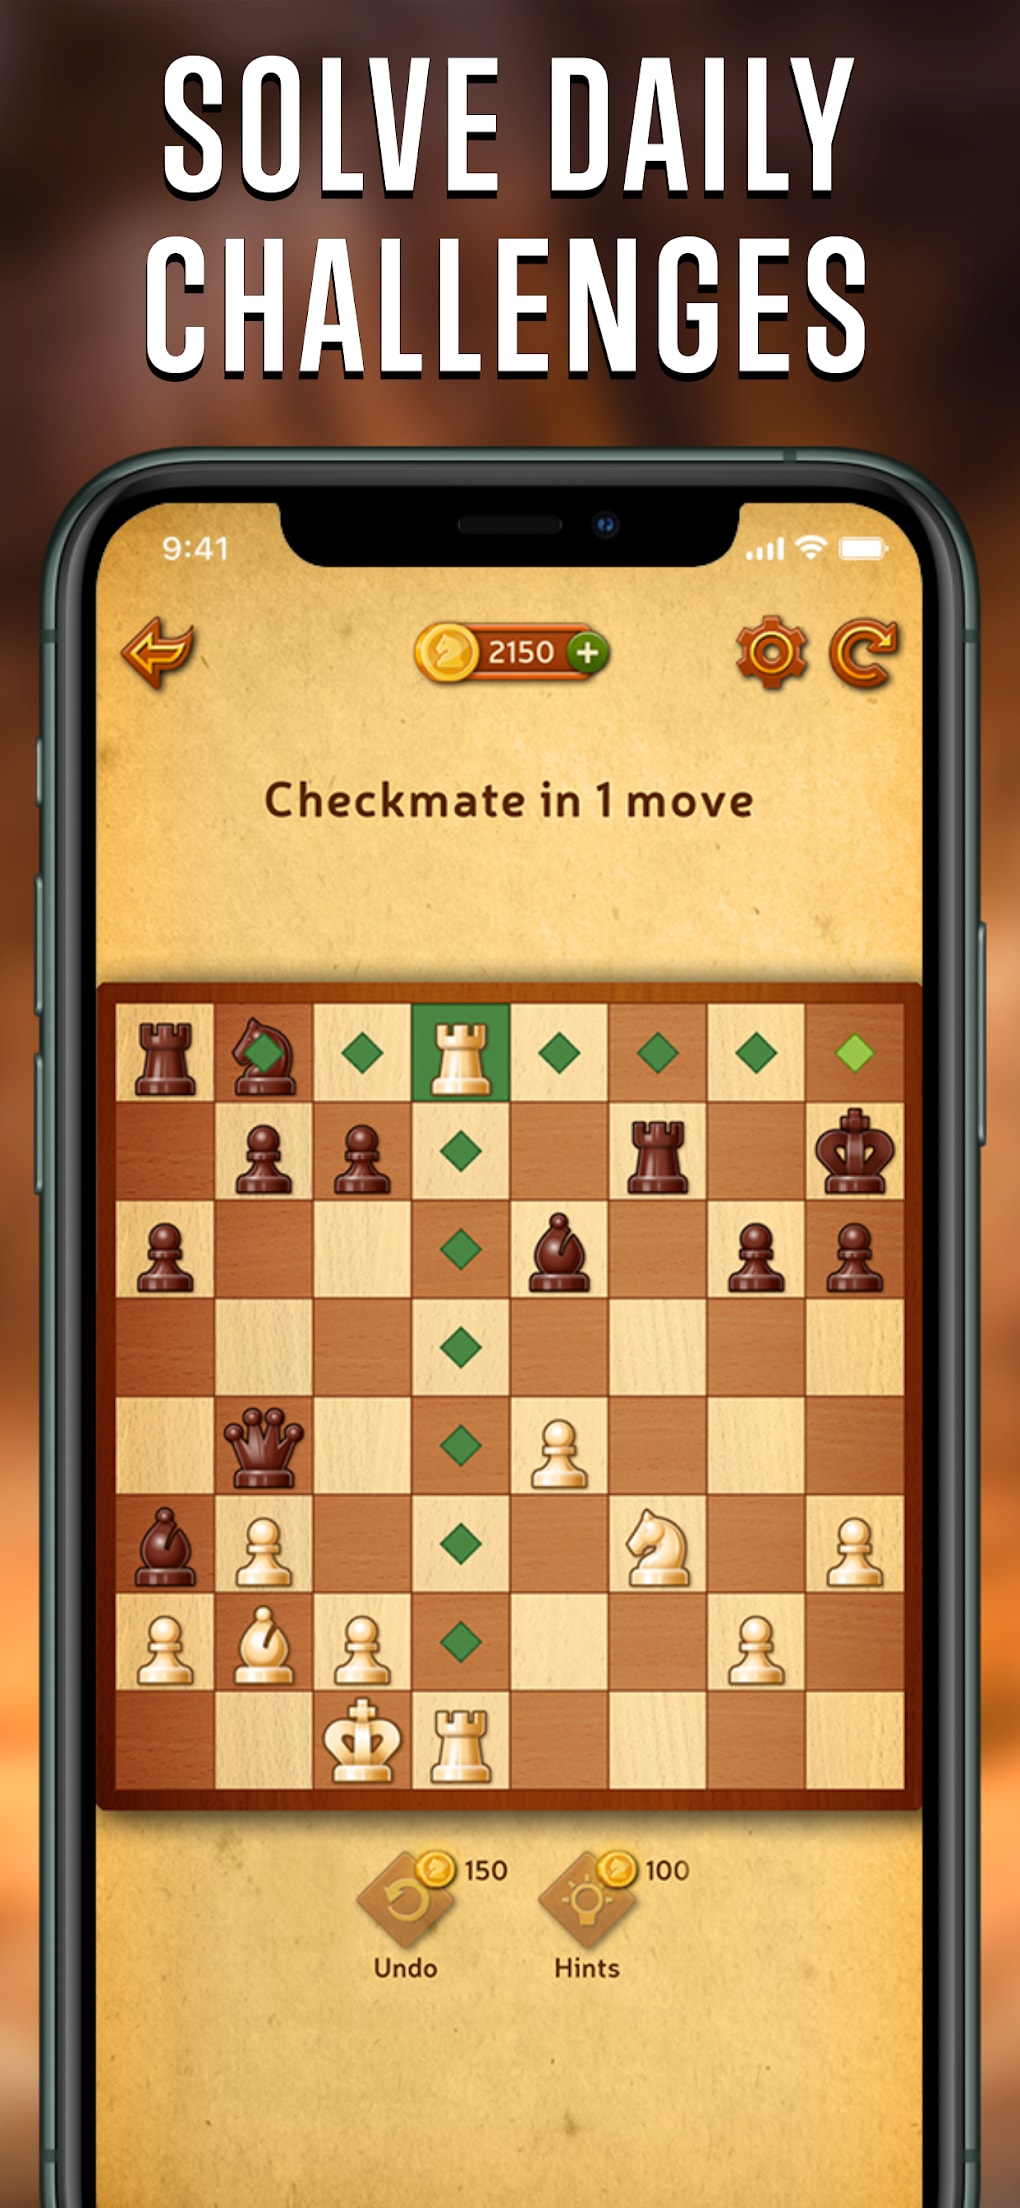 Chess - Clash of Kings, Aplicações de download da Nintendo Switch, Jogos